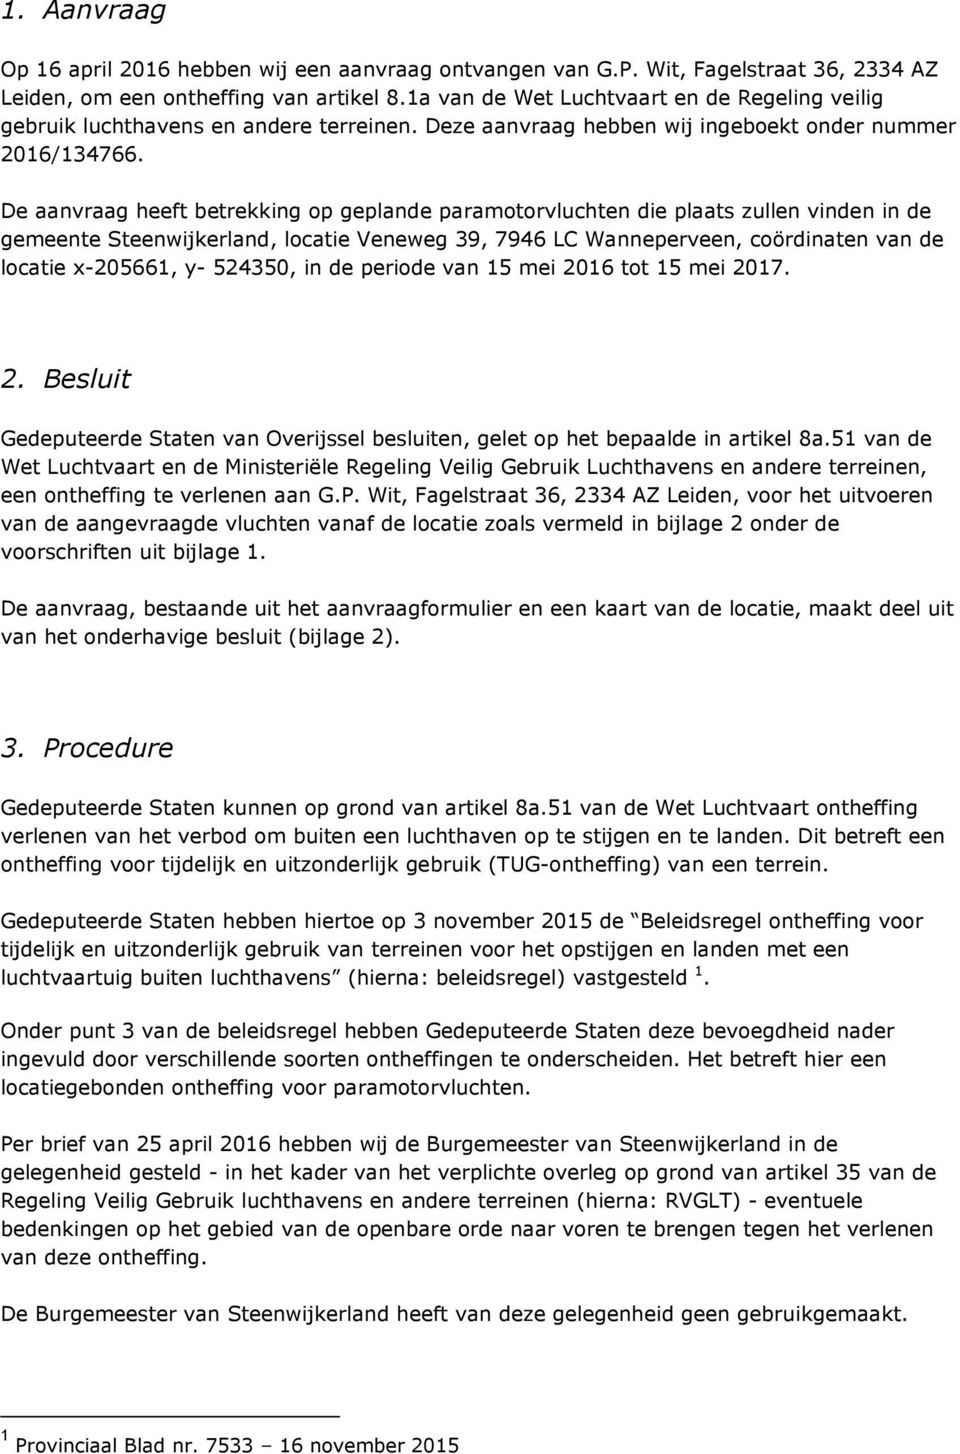 De aanvraag heeft betrekking op geplande paramotorvluchten die plaats zullen vinden in de gemeente Steenwijkerland, locatie Veneweg 39, 7946 LC Wanneperveen, coördinaten van de locatie x-205661, y-